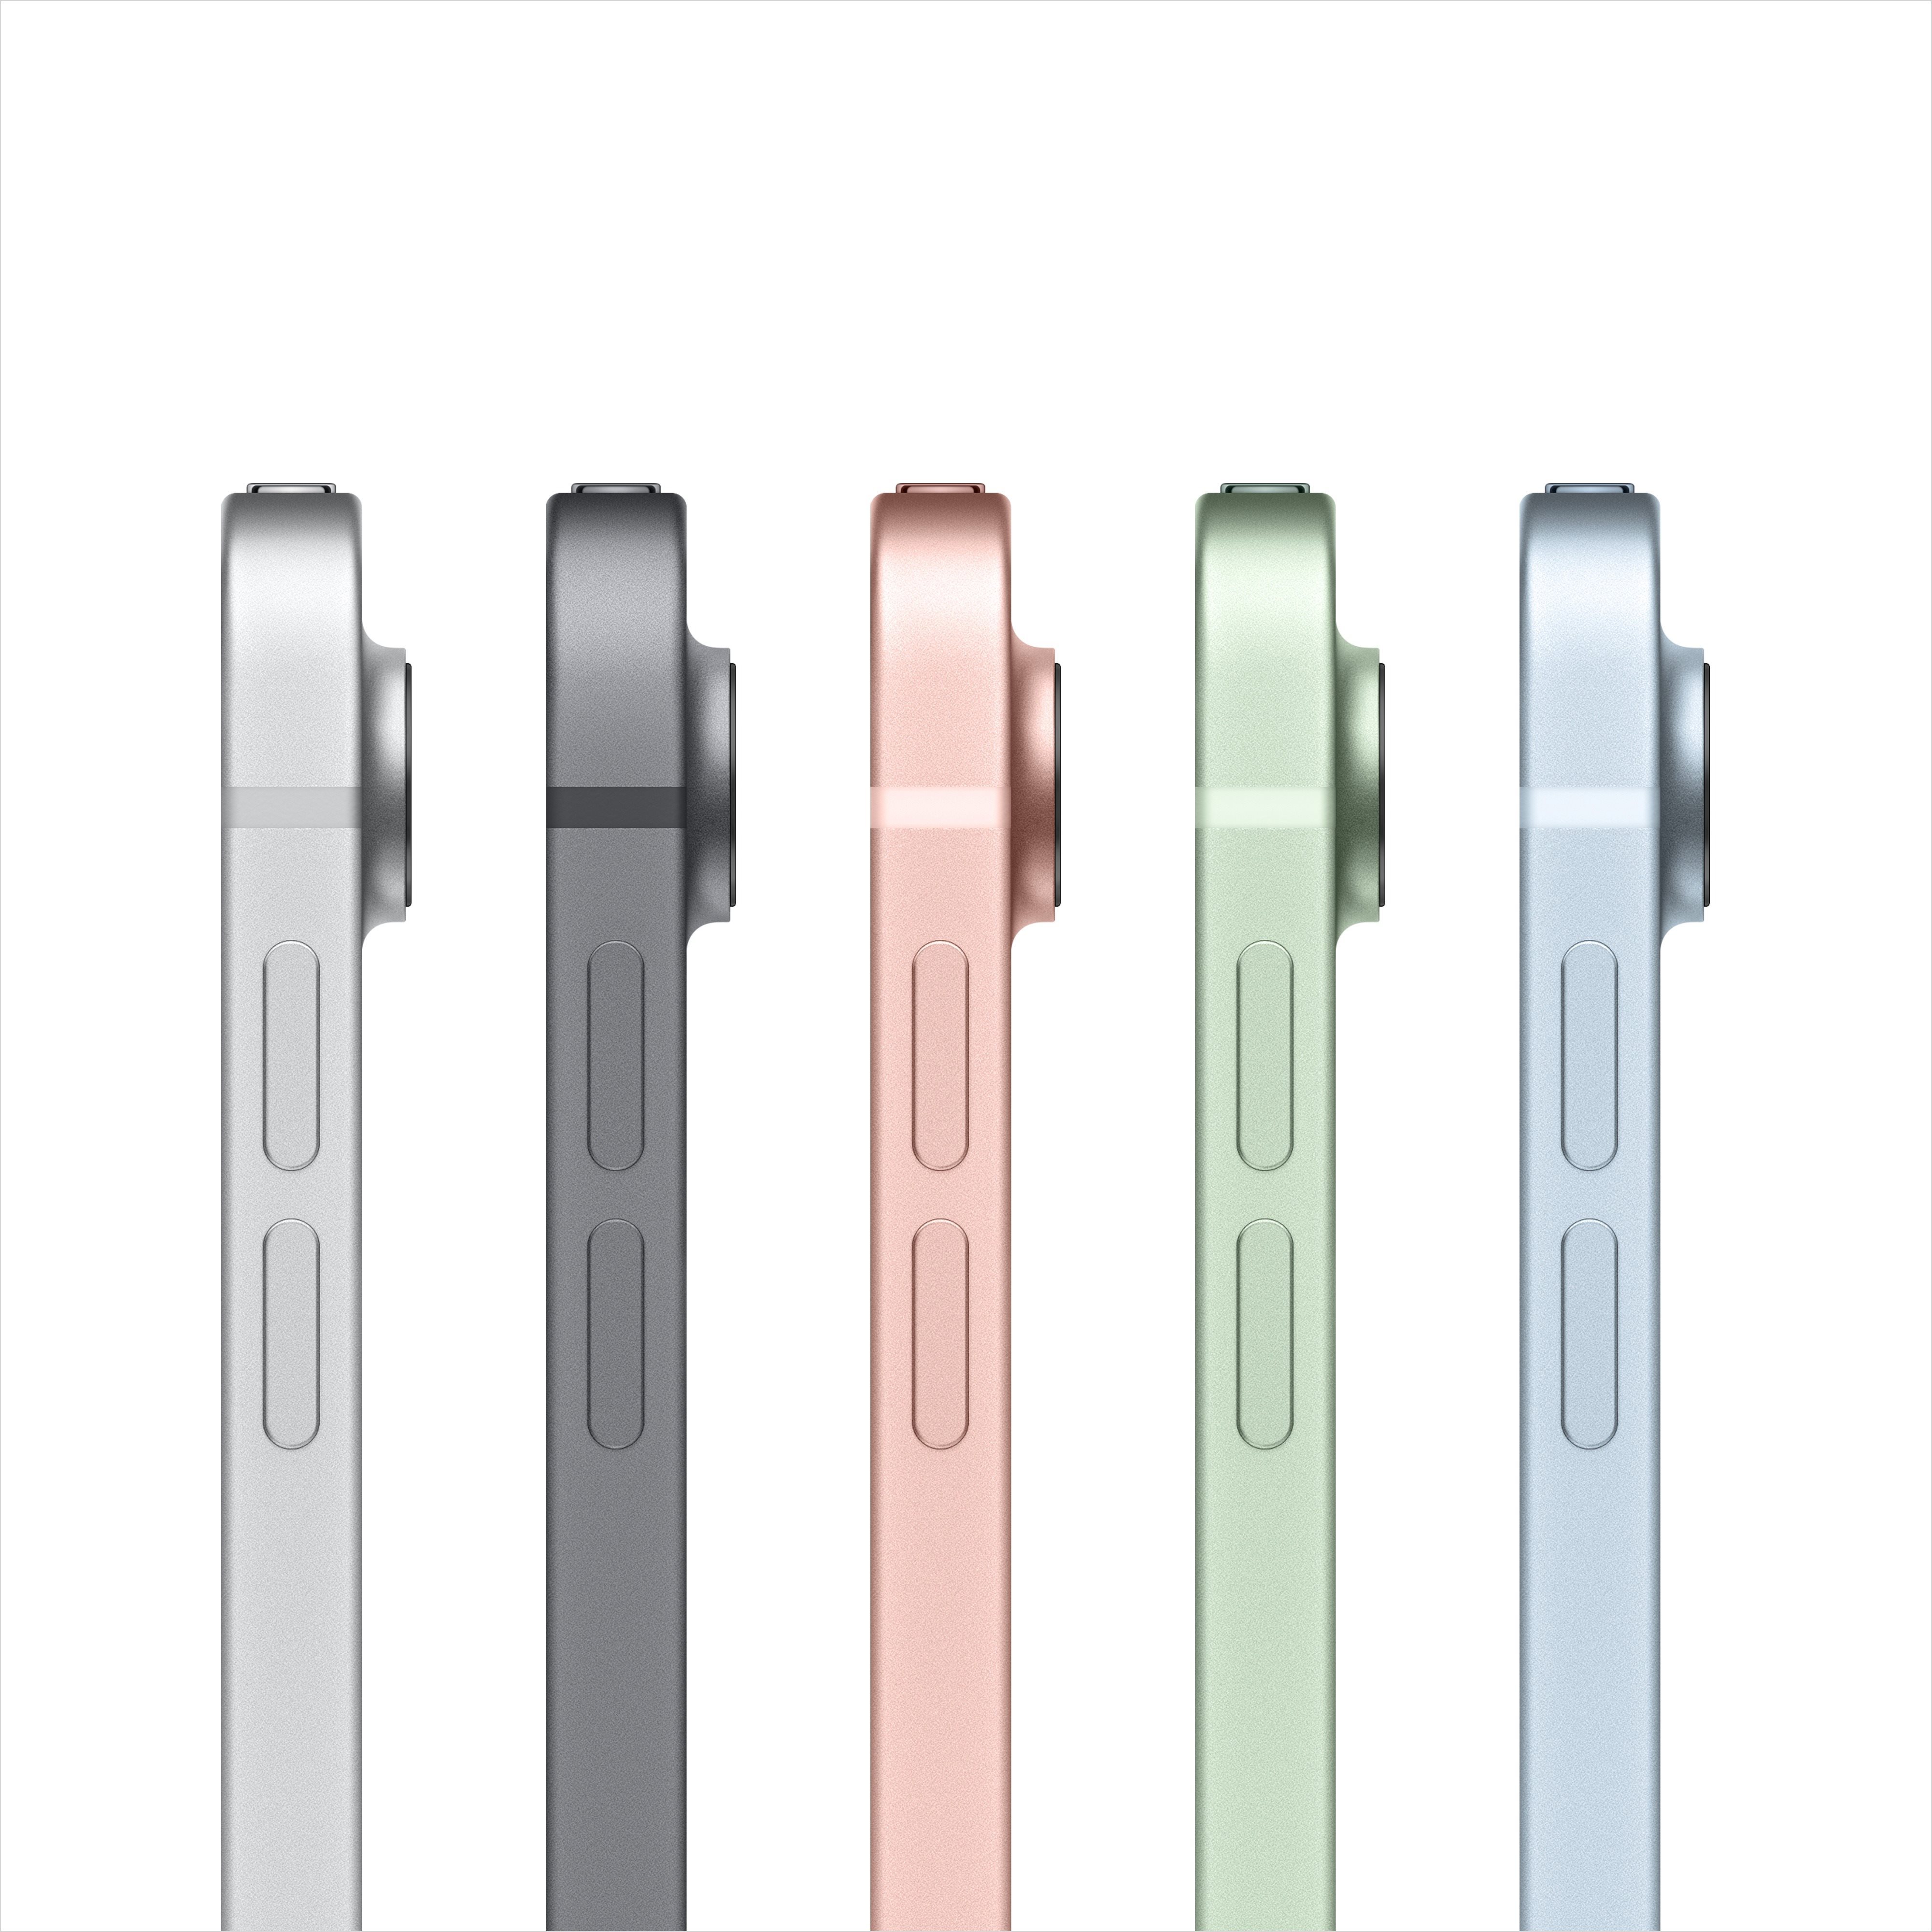 5 barevných provedení Apple iPad Air (2020)